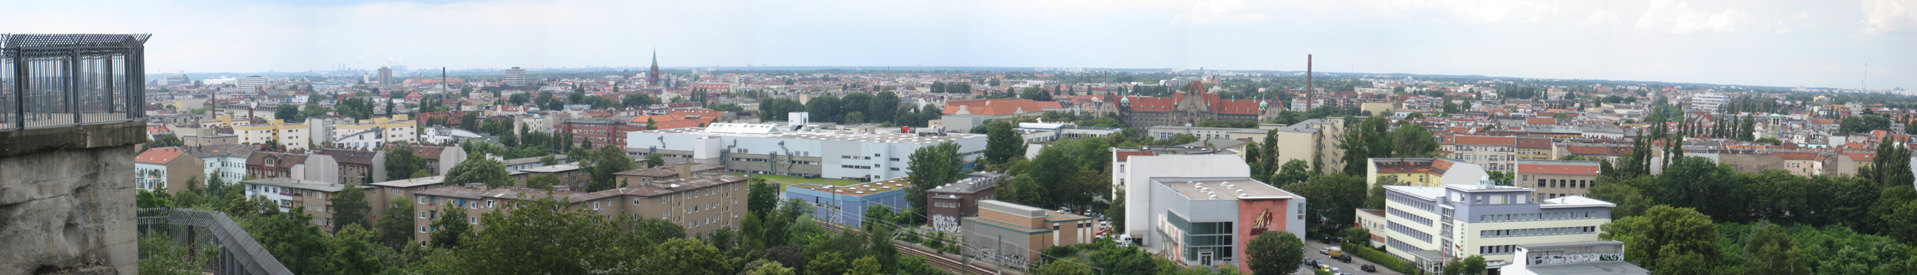 תמונת פנורמה של ברלין-גזונדברונן, במבט מגבעת הבונקר בפארק. בקצה השמאלי נמצא מגדל הפלאק הצפוני